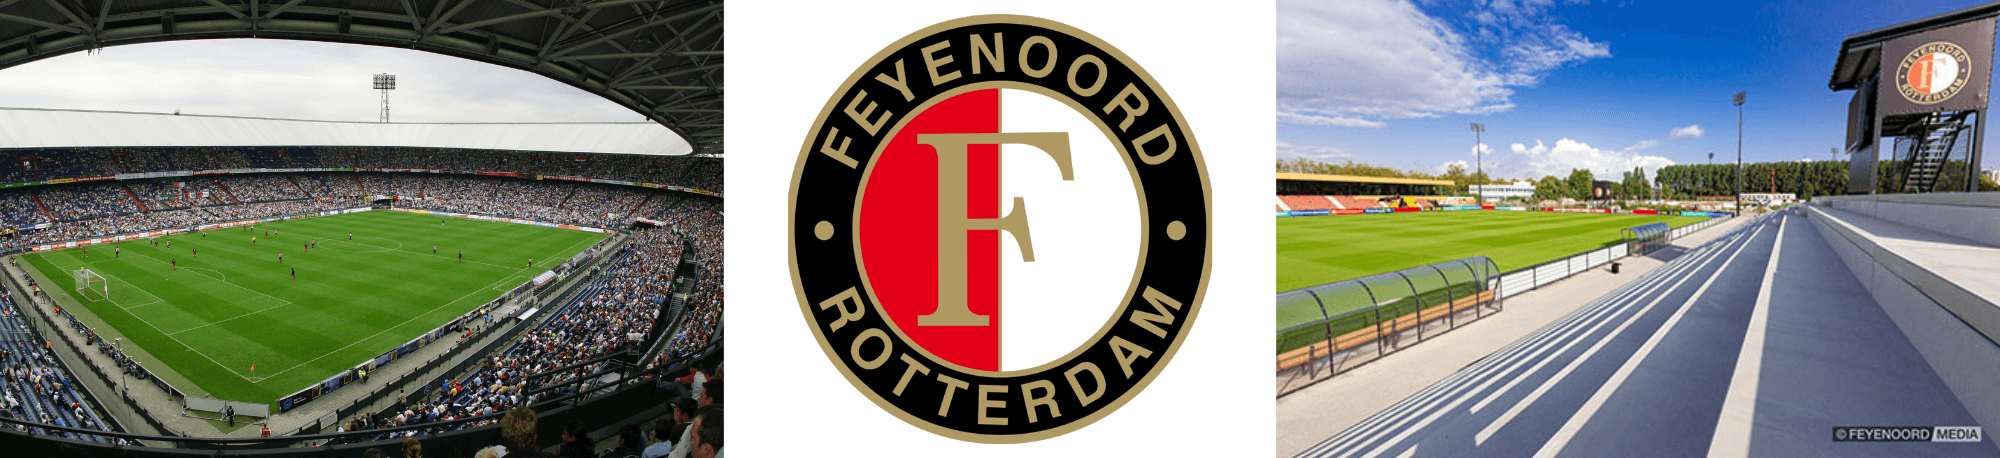 Feyenoord Stadium, Club Crest and Training Ground